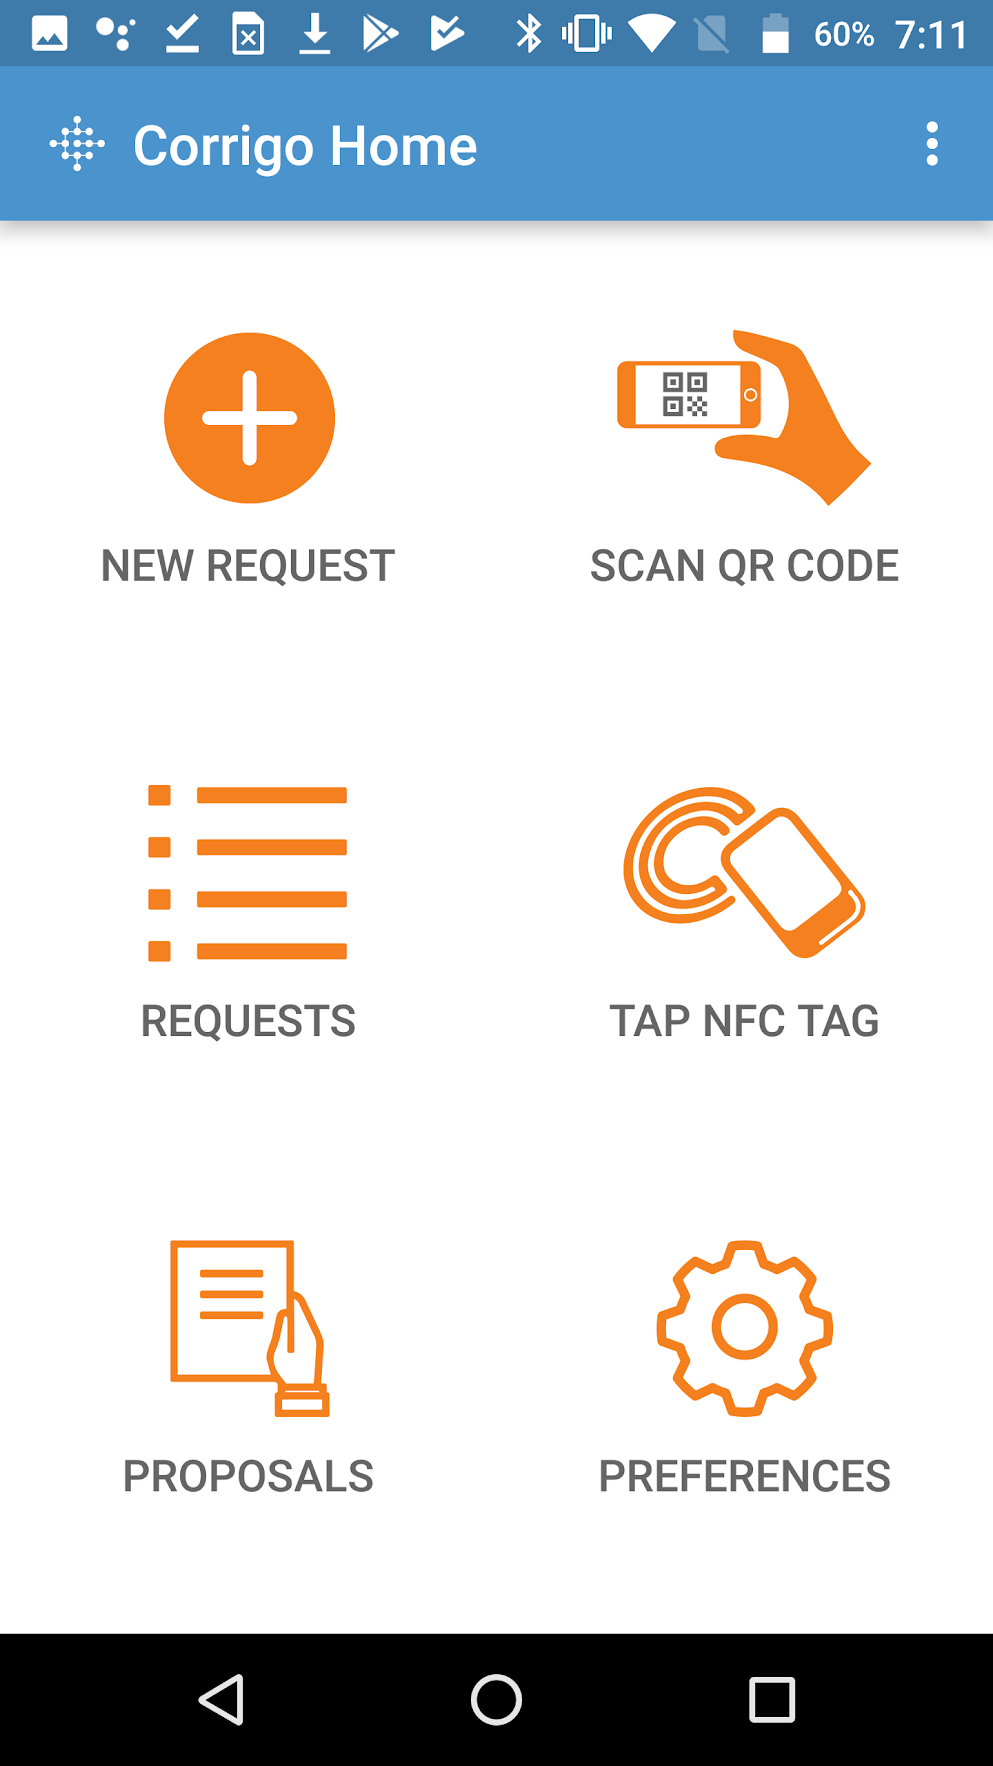 Corrigo Enterprise Software - The Corrigo mobile app allows facility tenants to make service requests